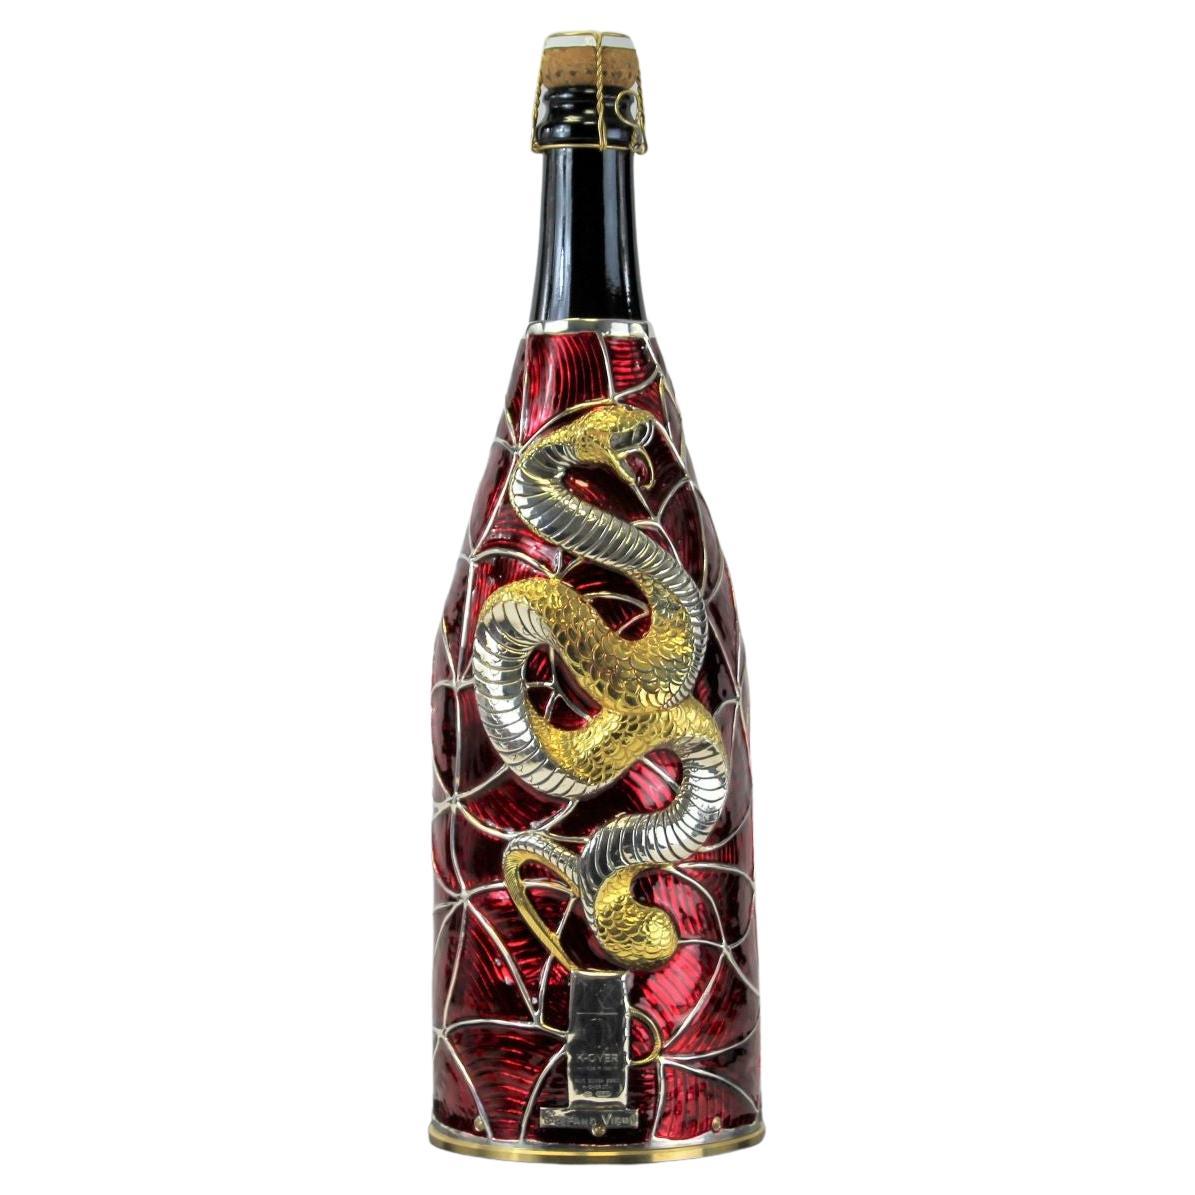 Dieser Champagne K-OVER ist Teil unserer Collection'S Kunstwerke.
Vollständig aus reinem Silber 999/°° gefertigt, von unserem Künstler Stefano Vigni von Hand ziseliert und bemalt.
Der Künstler entwarf einen gewundenen geometrischen Hintergrund, auf